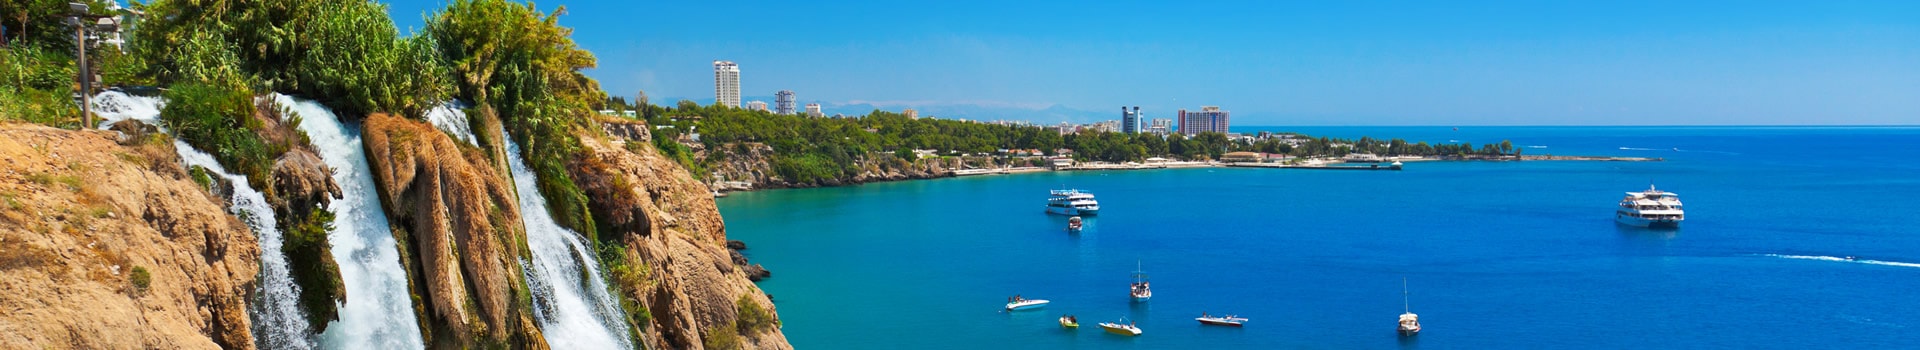 Beirut - Antalya